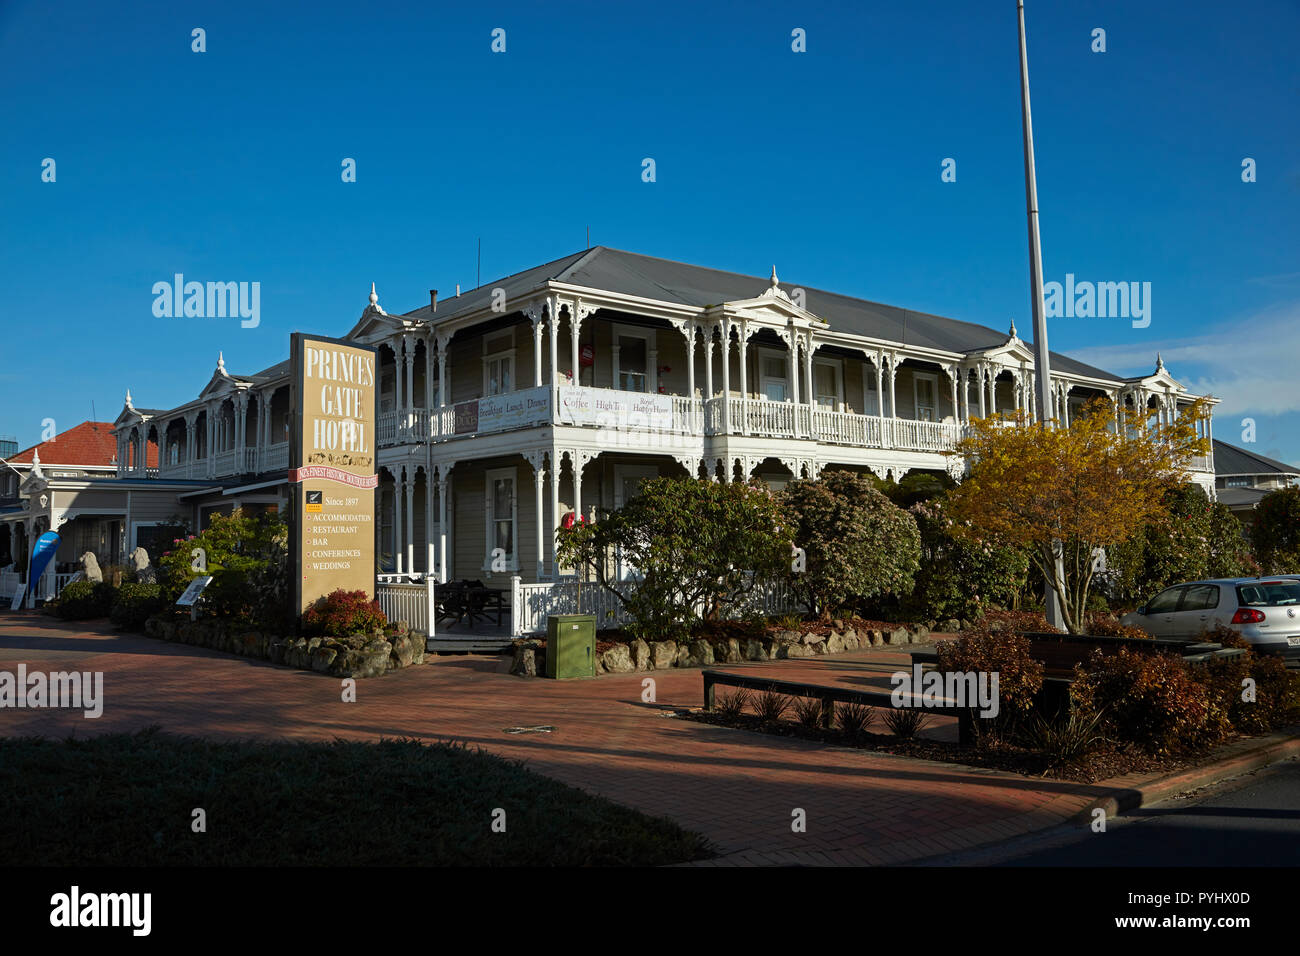 Prince's Gate hôtel historique, Rotorua, île du Nord, Nouvelle-Zélande Banque D'Images